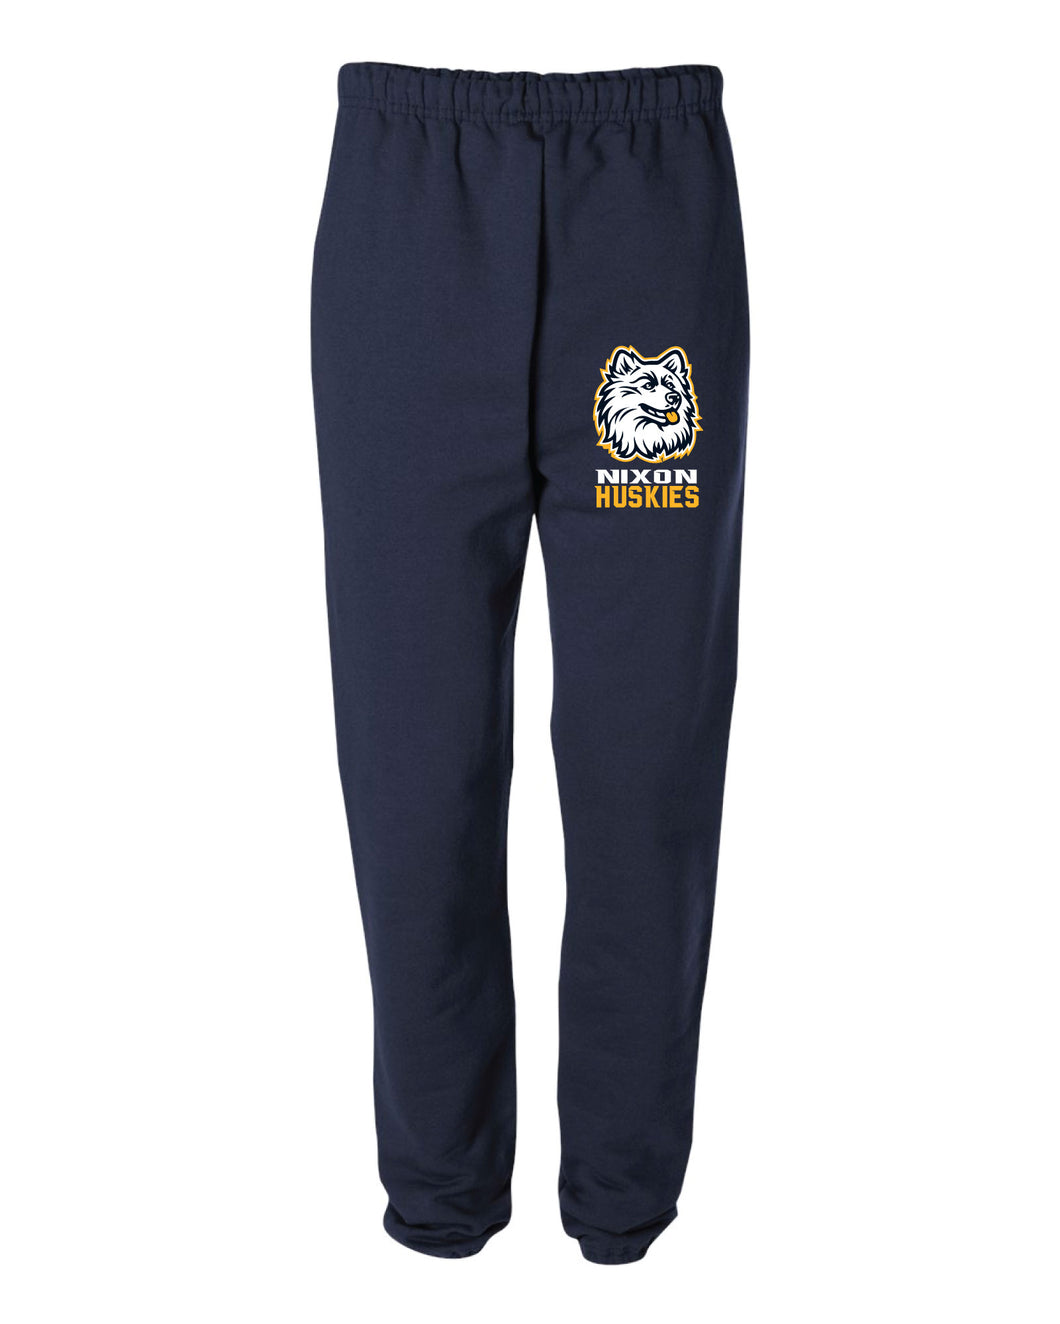 Nixon Huskies School Cotton Sweatpants - Navy - 5KounT